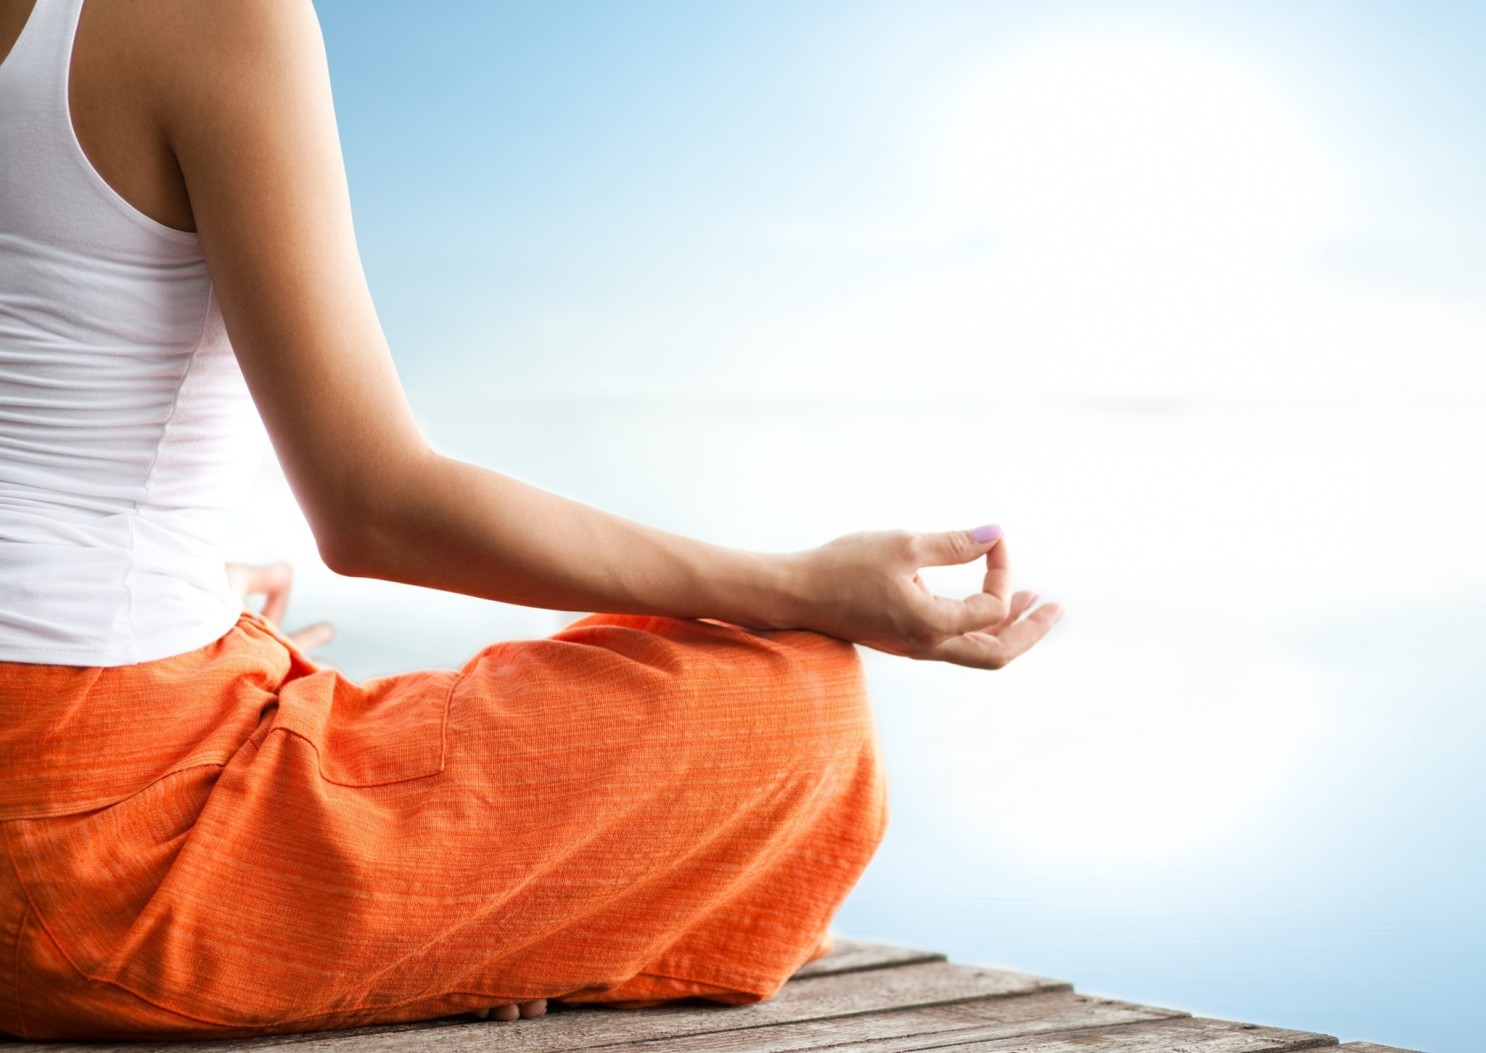 Why we meditate